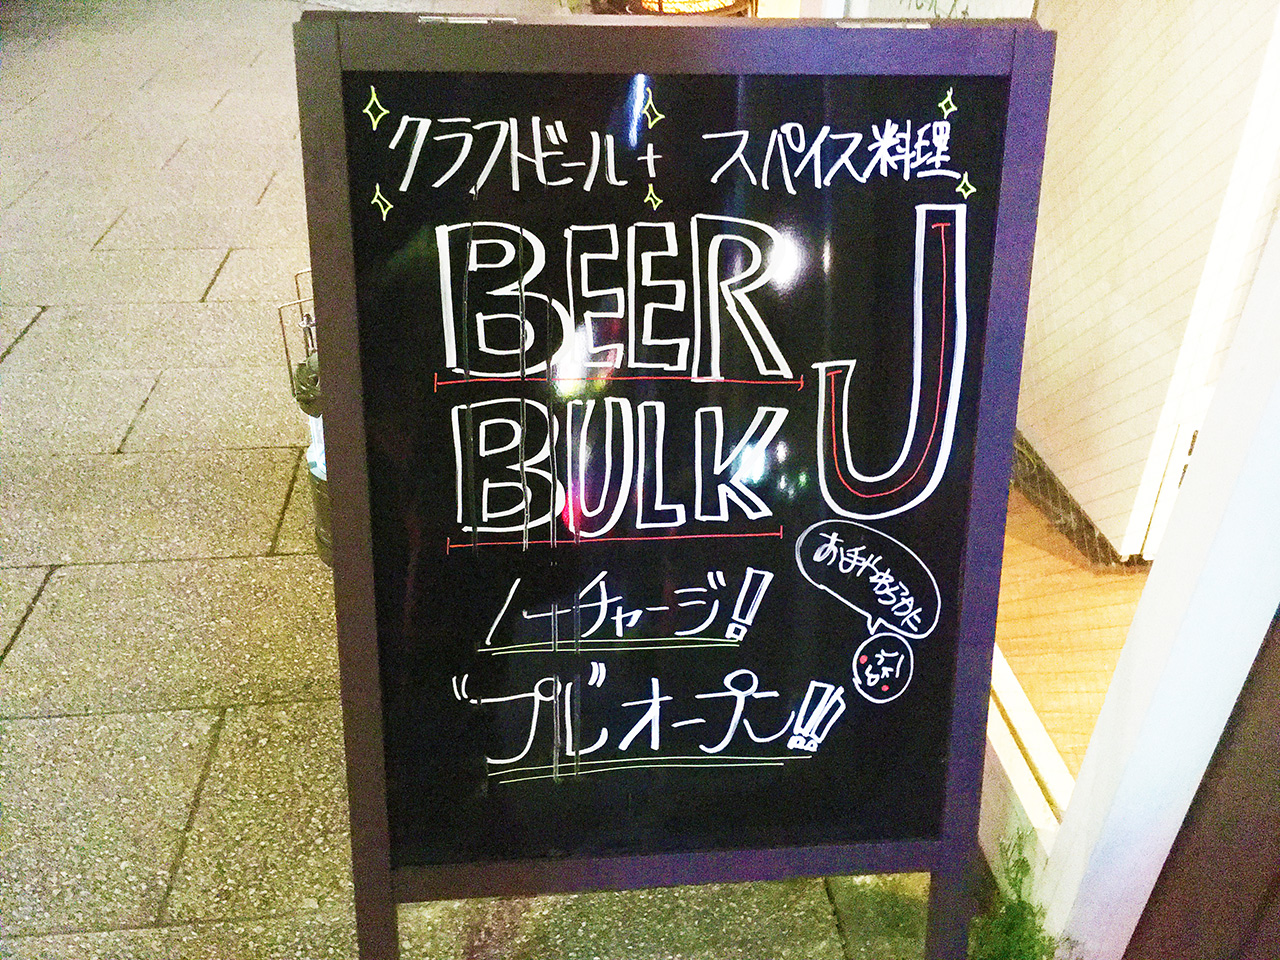 クラフトビールとスパイス料理のお店BEERBULK Jが3月4日にプレオープン